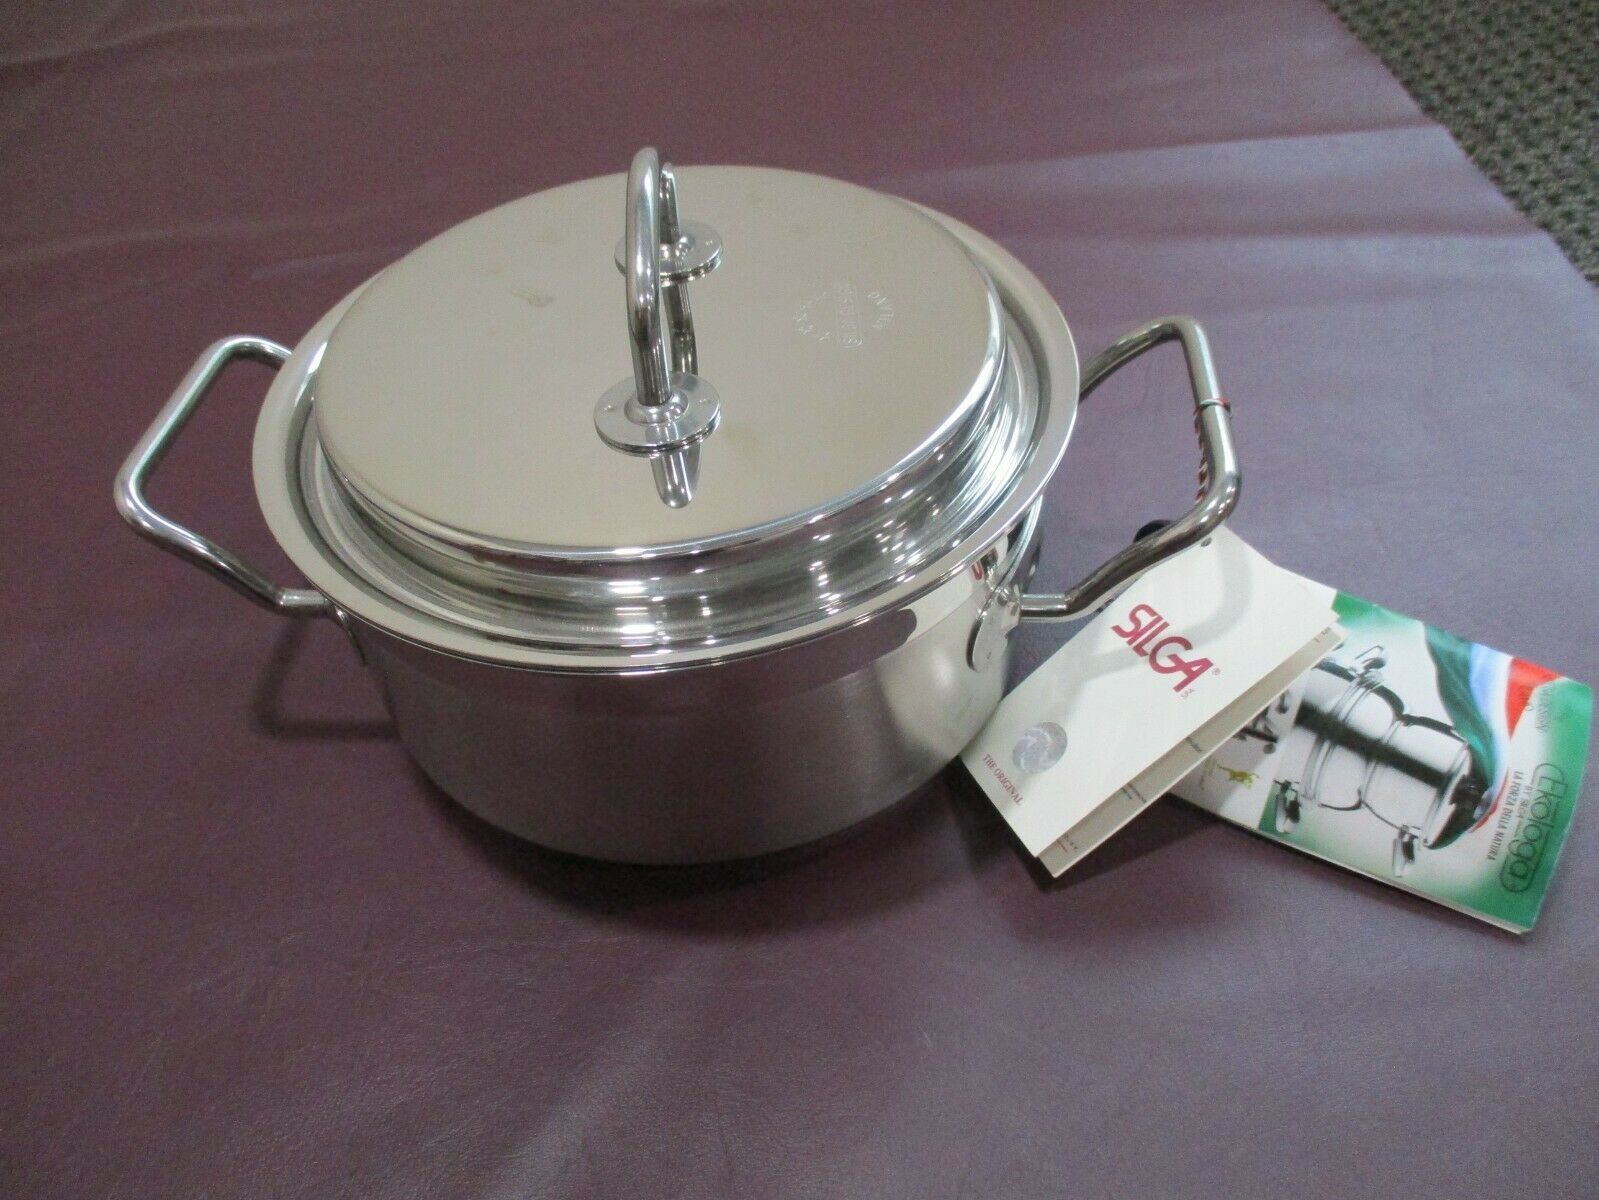 Hexclad Hybrid Cookware 6 Pc Set- 2, 3, 8 Qt Saucepans w/lids NIB WITH  WARRANTY!